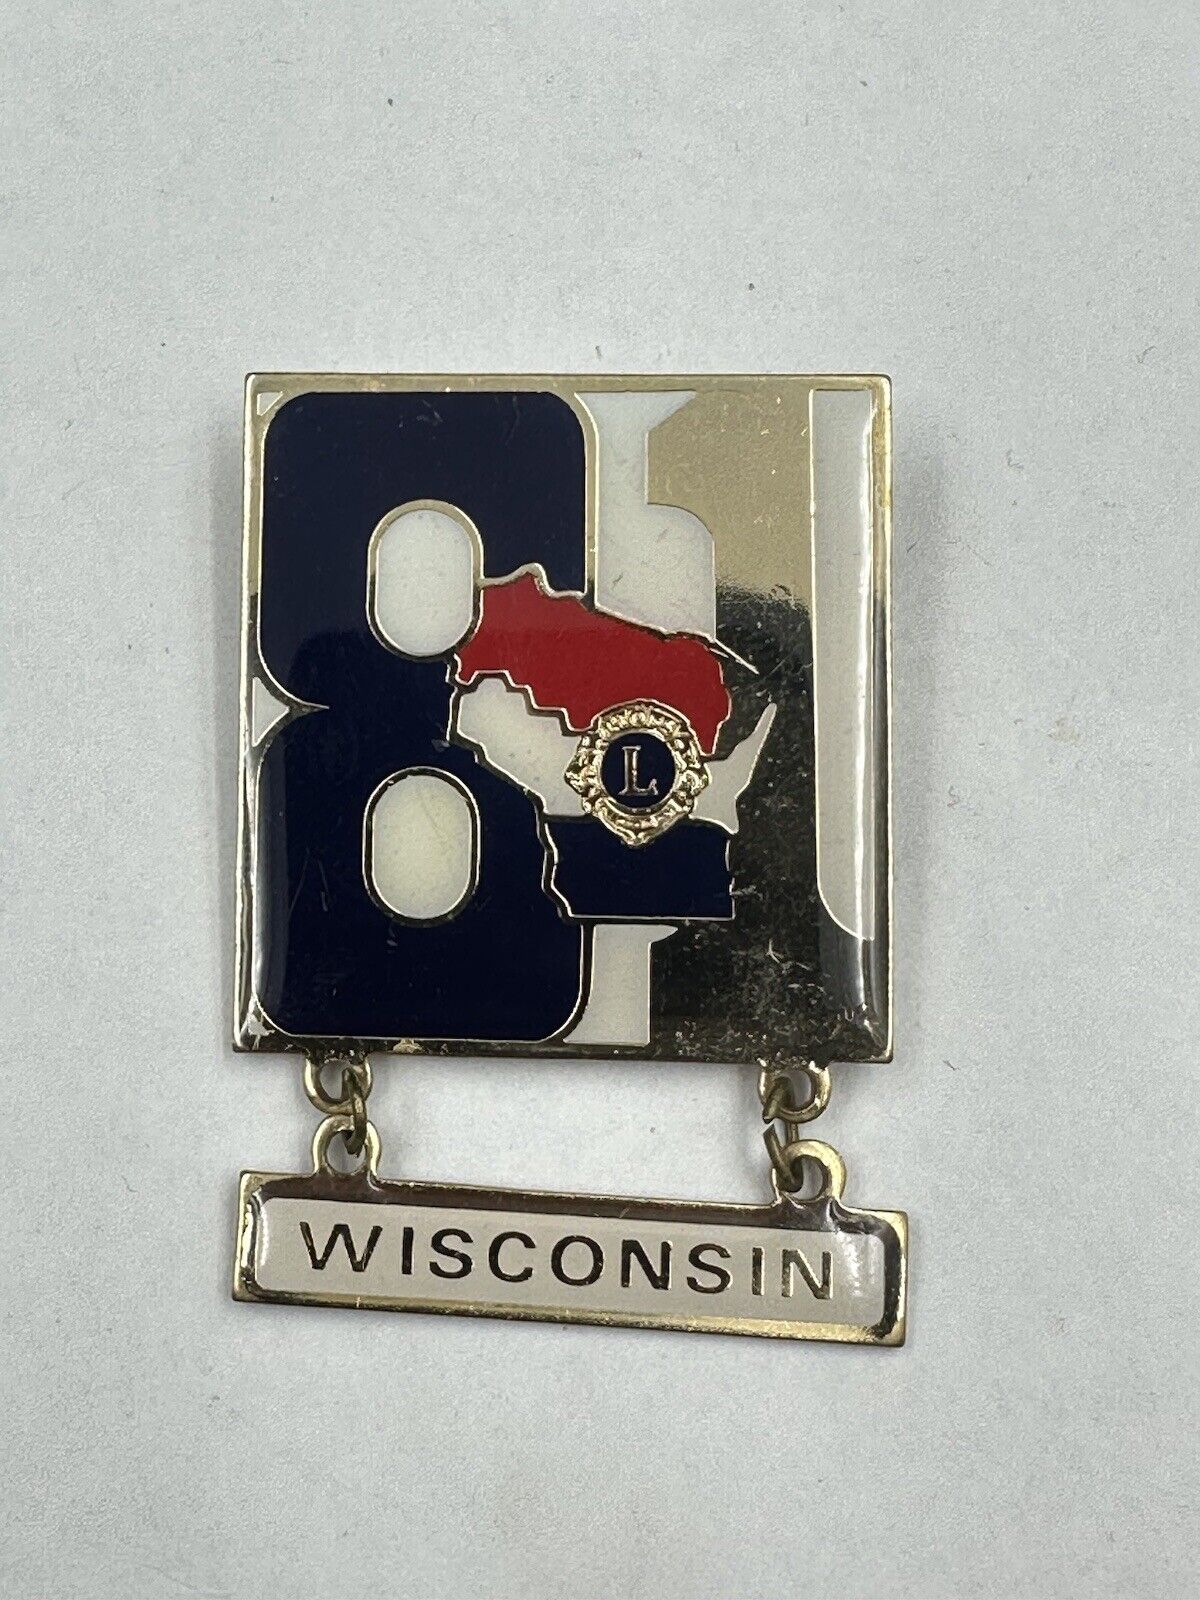 Wisconsin 1981 Lions Club Pin Dangler